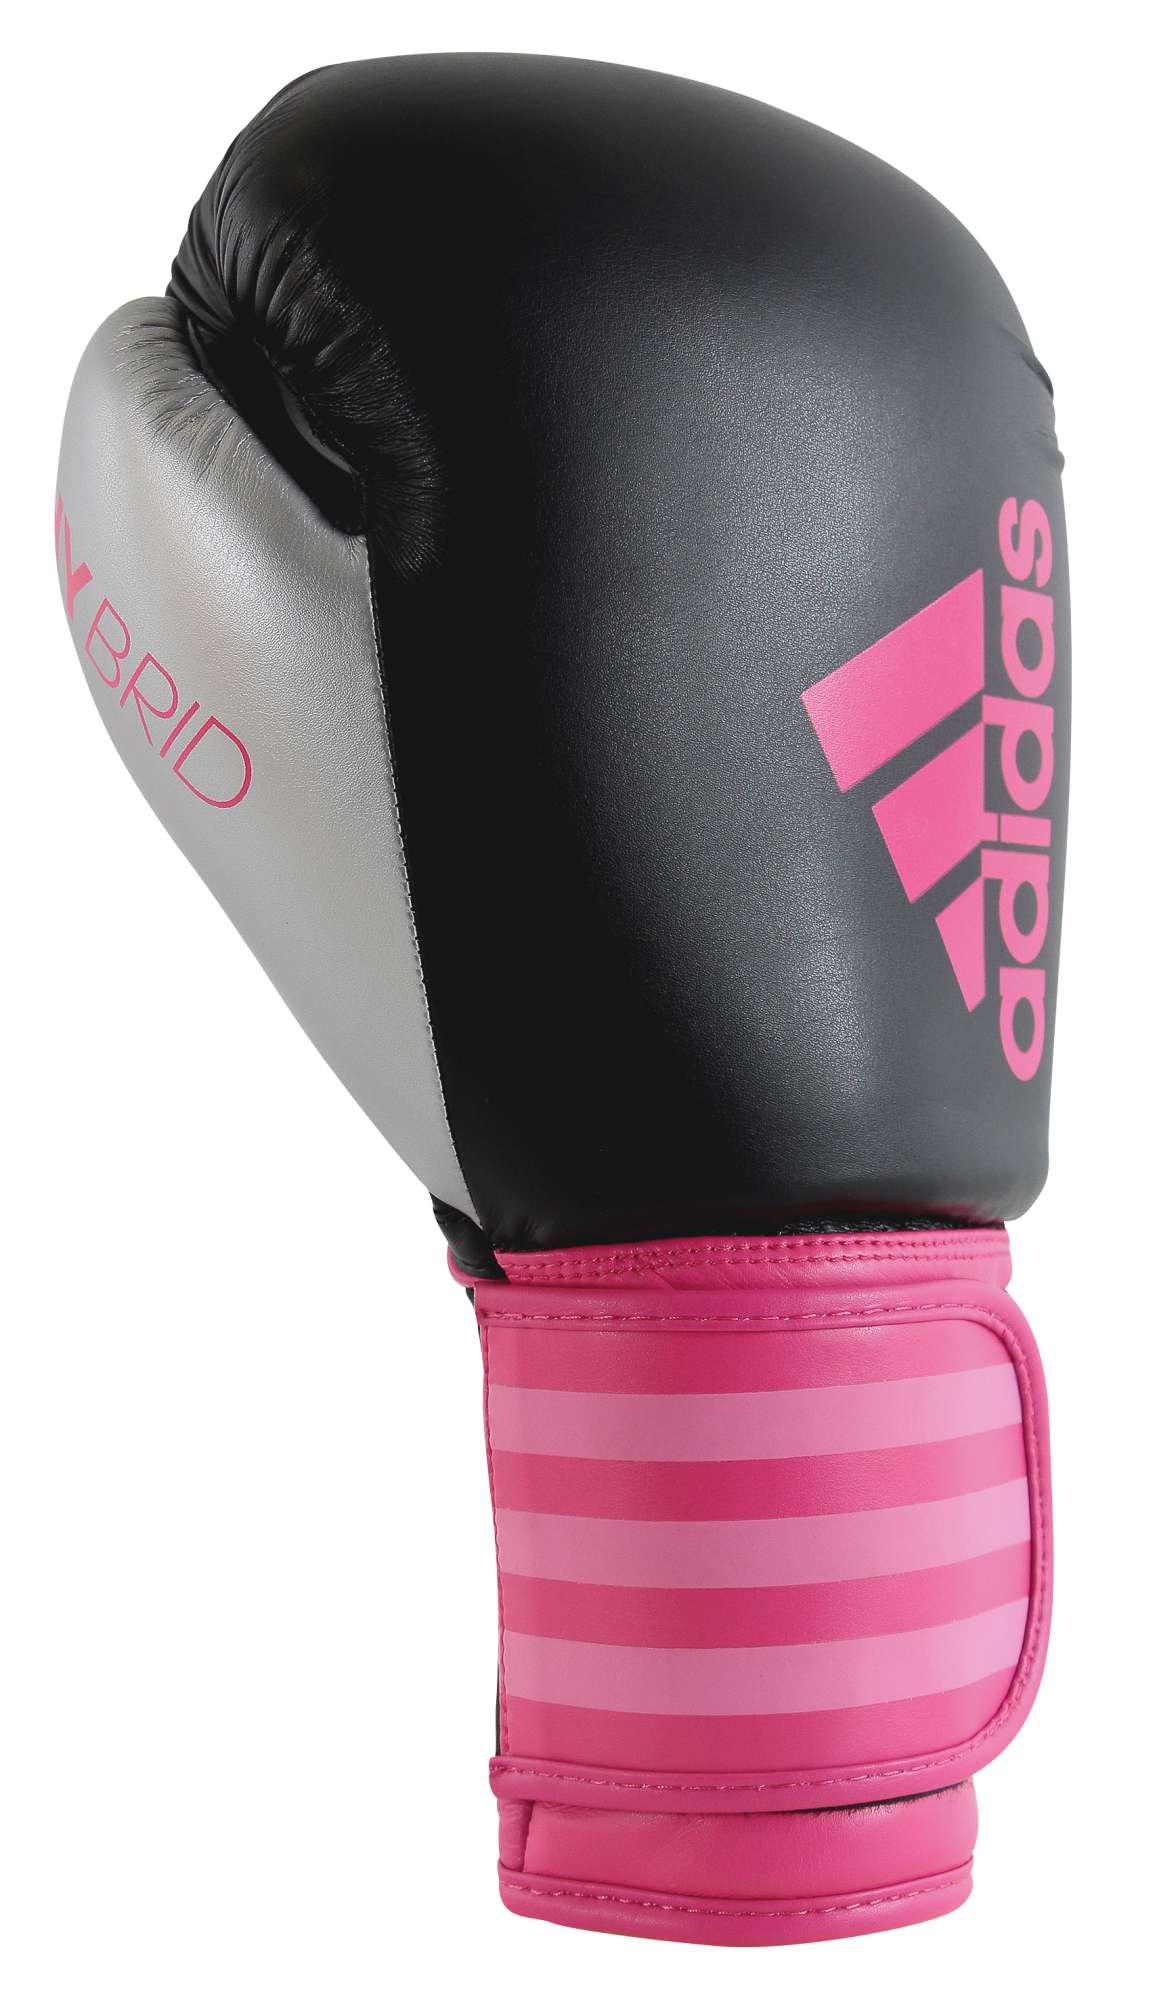 Women’s boxing gloves